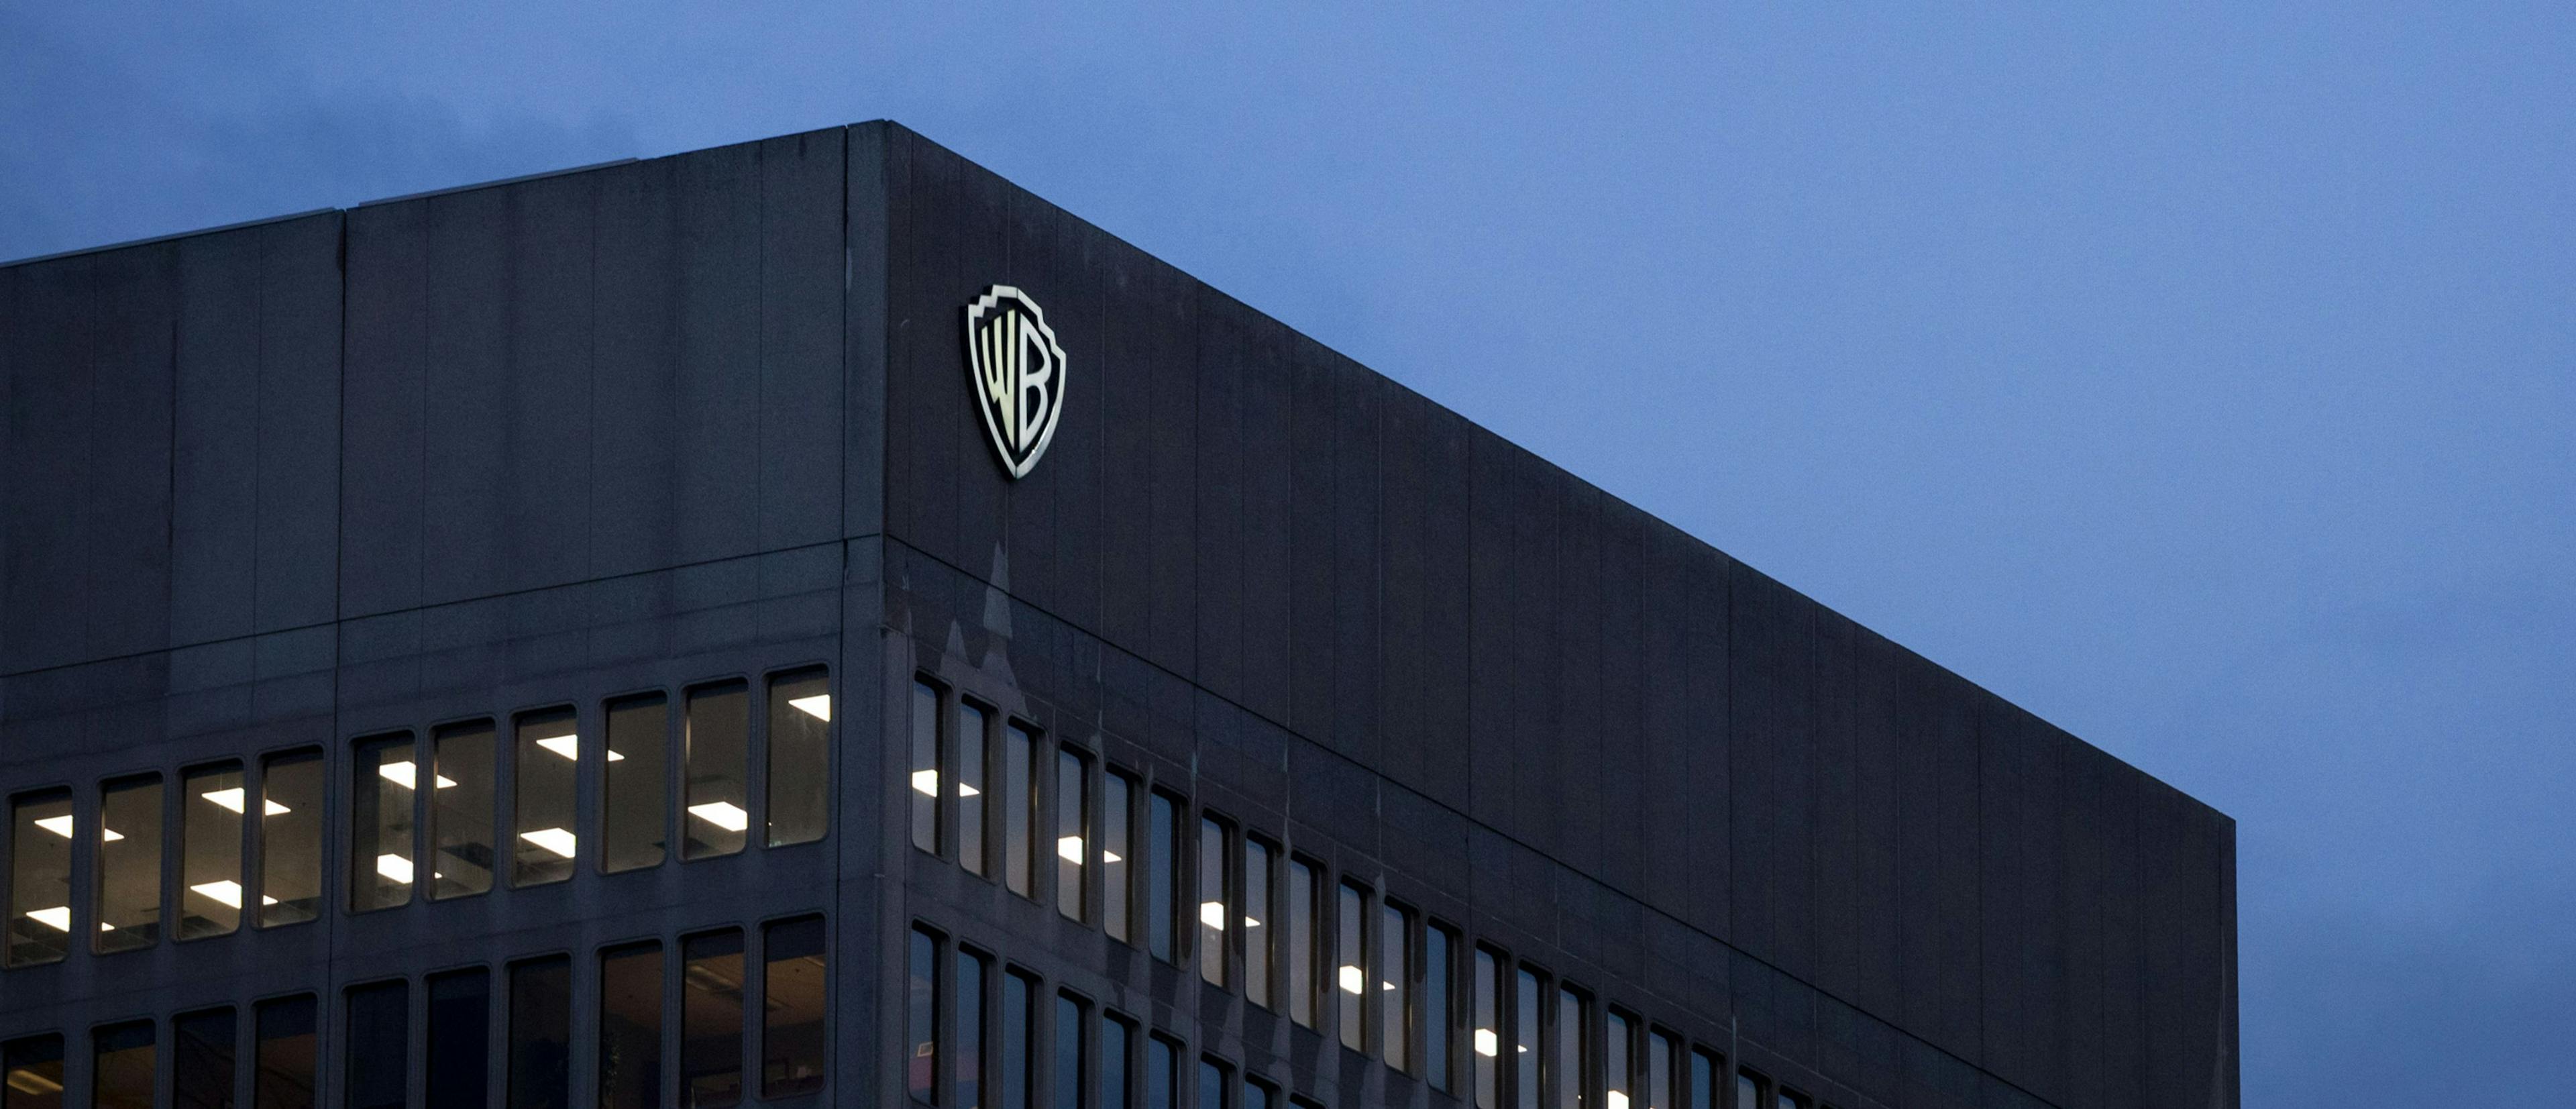 Panorámica de la fachada de las oficinas de Warner Bros. en Montreal, Canadá